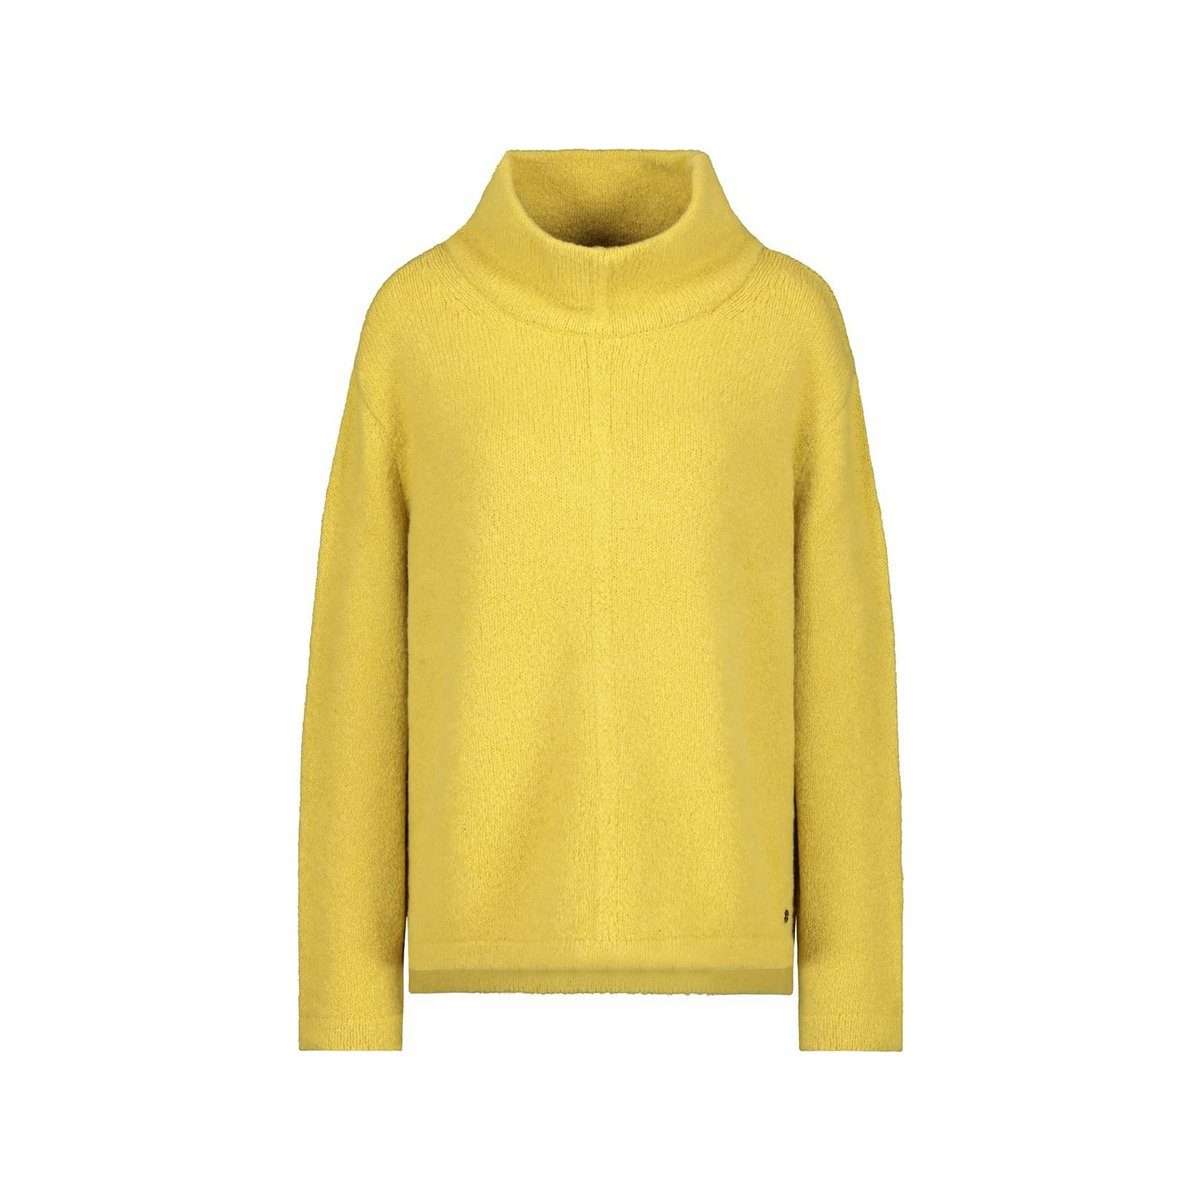 Длинный свитер желтый (1 шт.)